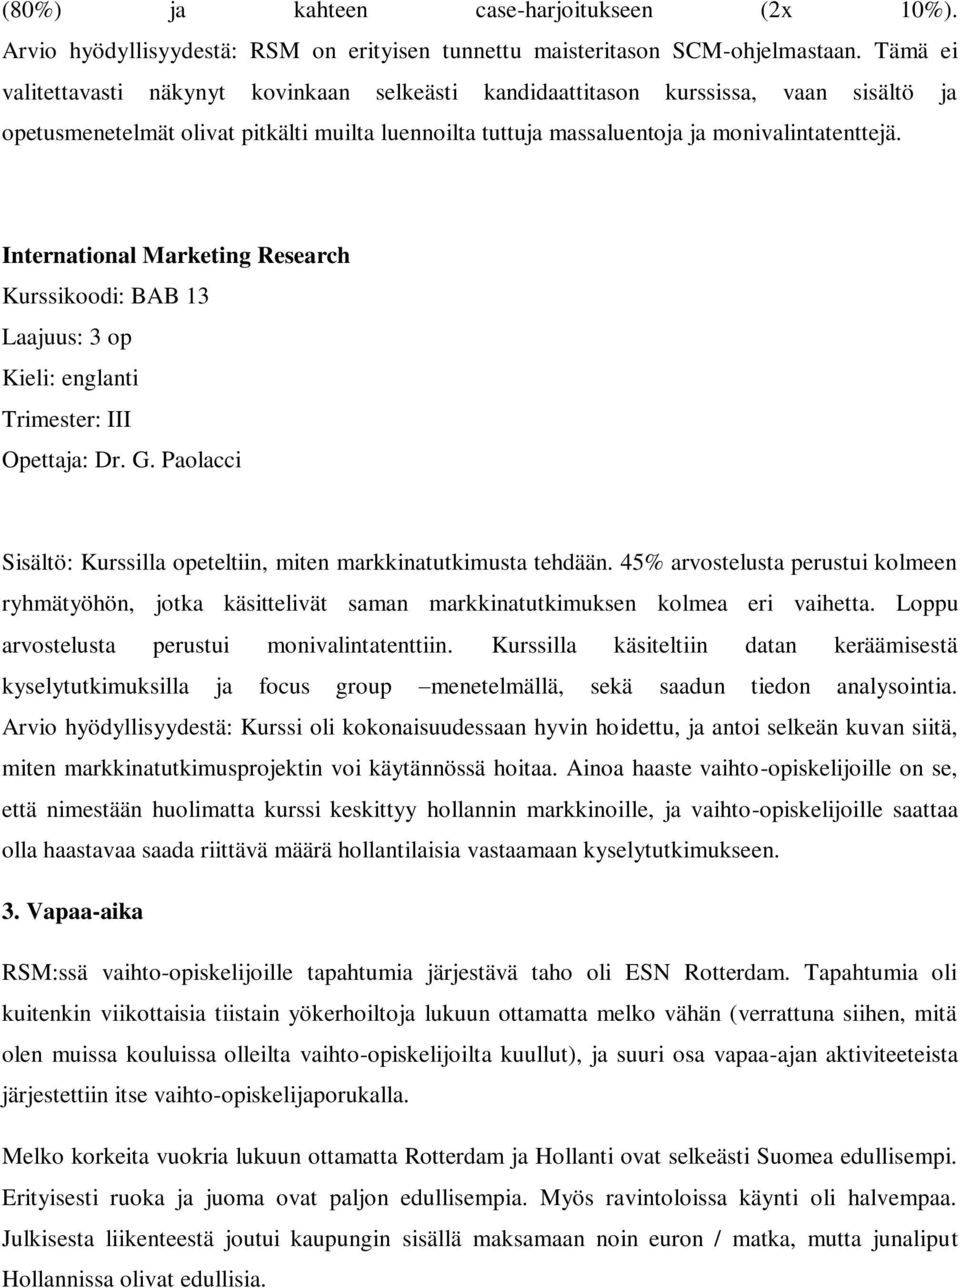 International Marketing Research Kurssikoodi: BAB 13 Laajuus: 3 op Trimester: III Opettaja: Dr. G. Paolacci Sisältö: Kurssilla opeteltiin, miten markkinatutkimusta tehdään.